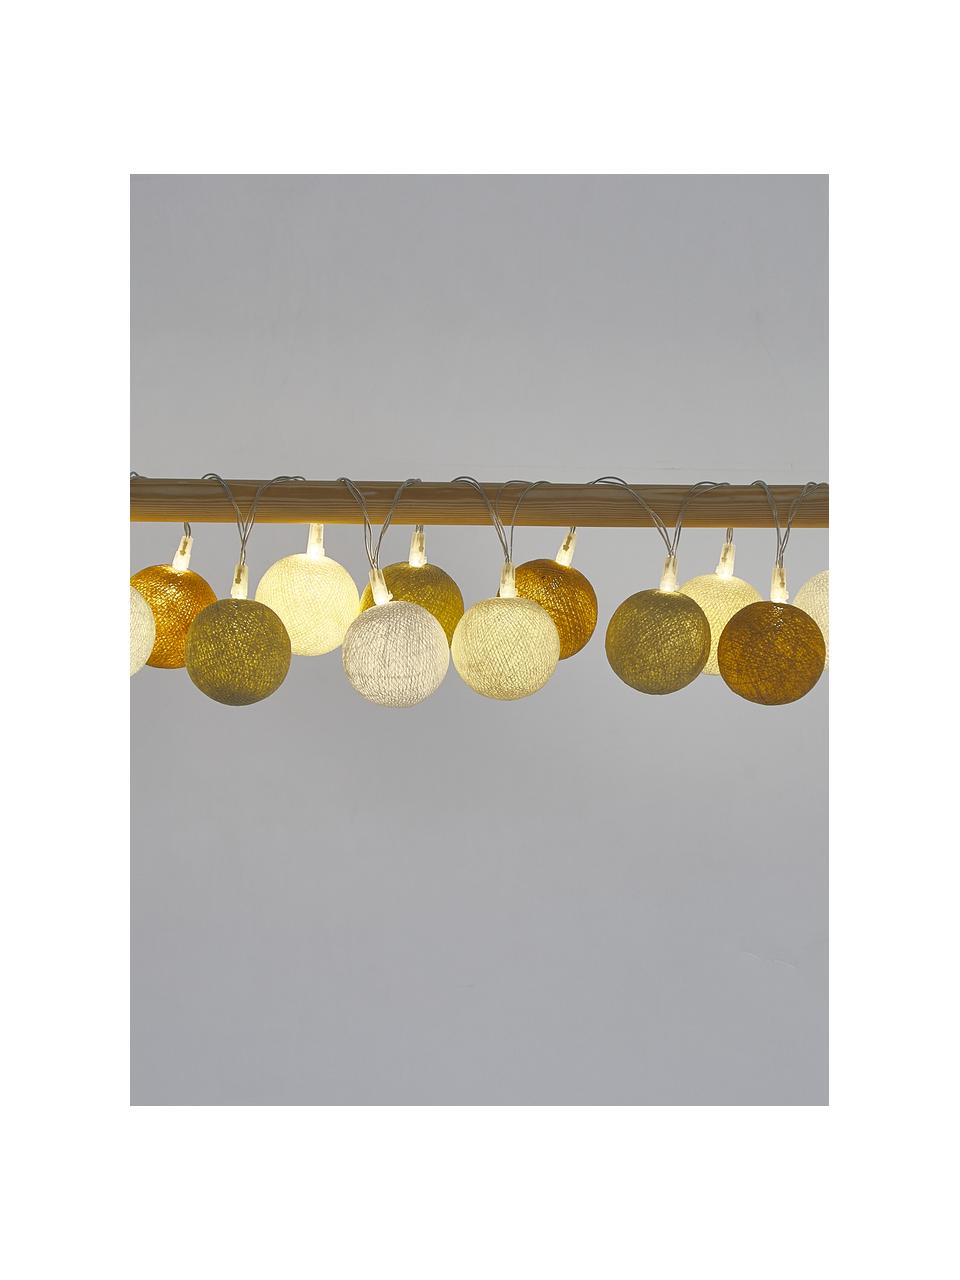 Guirlande lumineuse LED Colorain, 378 cm, 20 lampions, Blanc, crème, beige, jaune moutarde, long. 378 cm